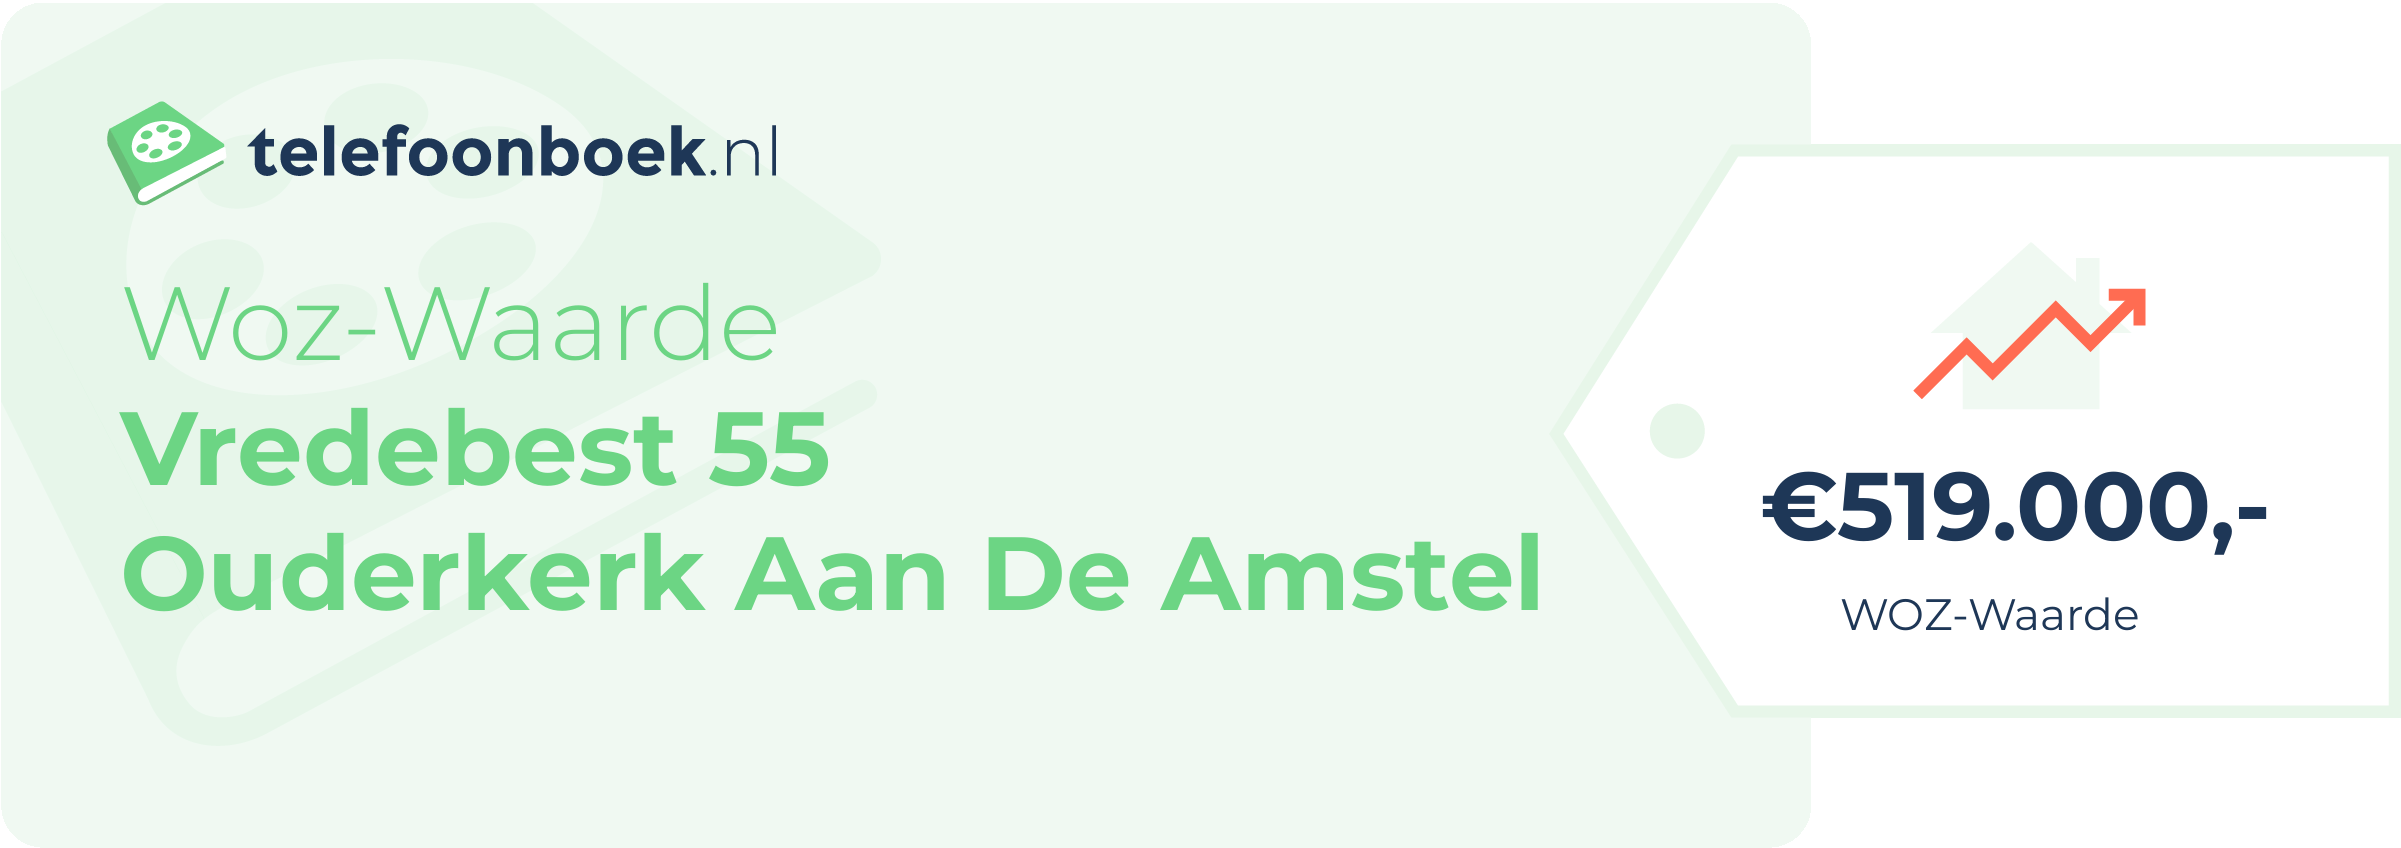 WOZ-waarde Vredebest 55 Ouderkerk Aan De Amstel